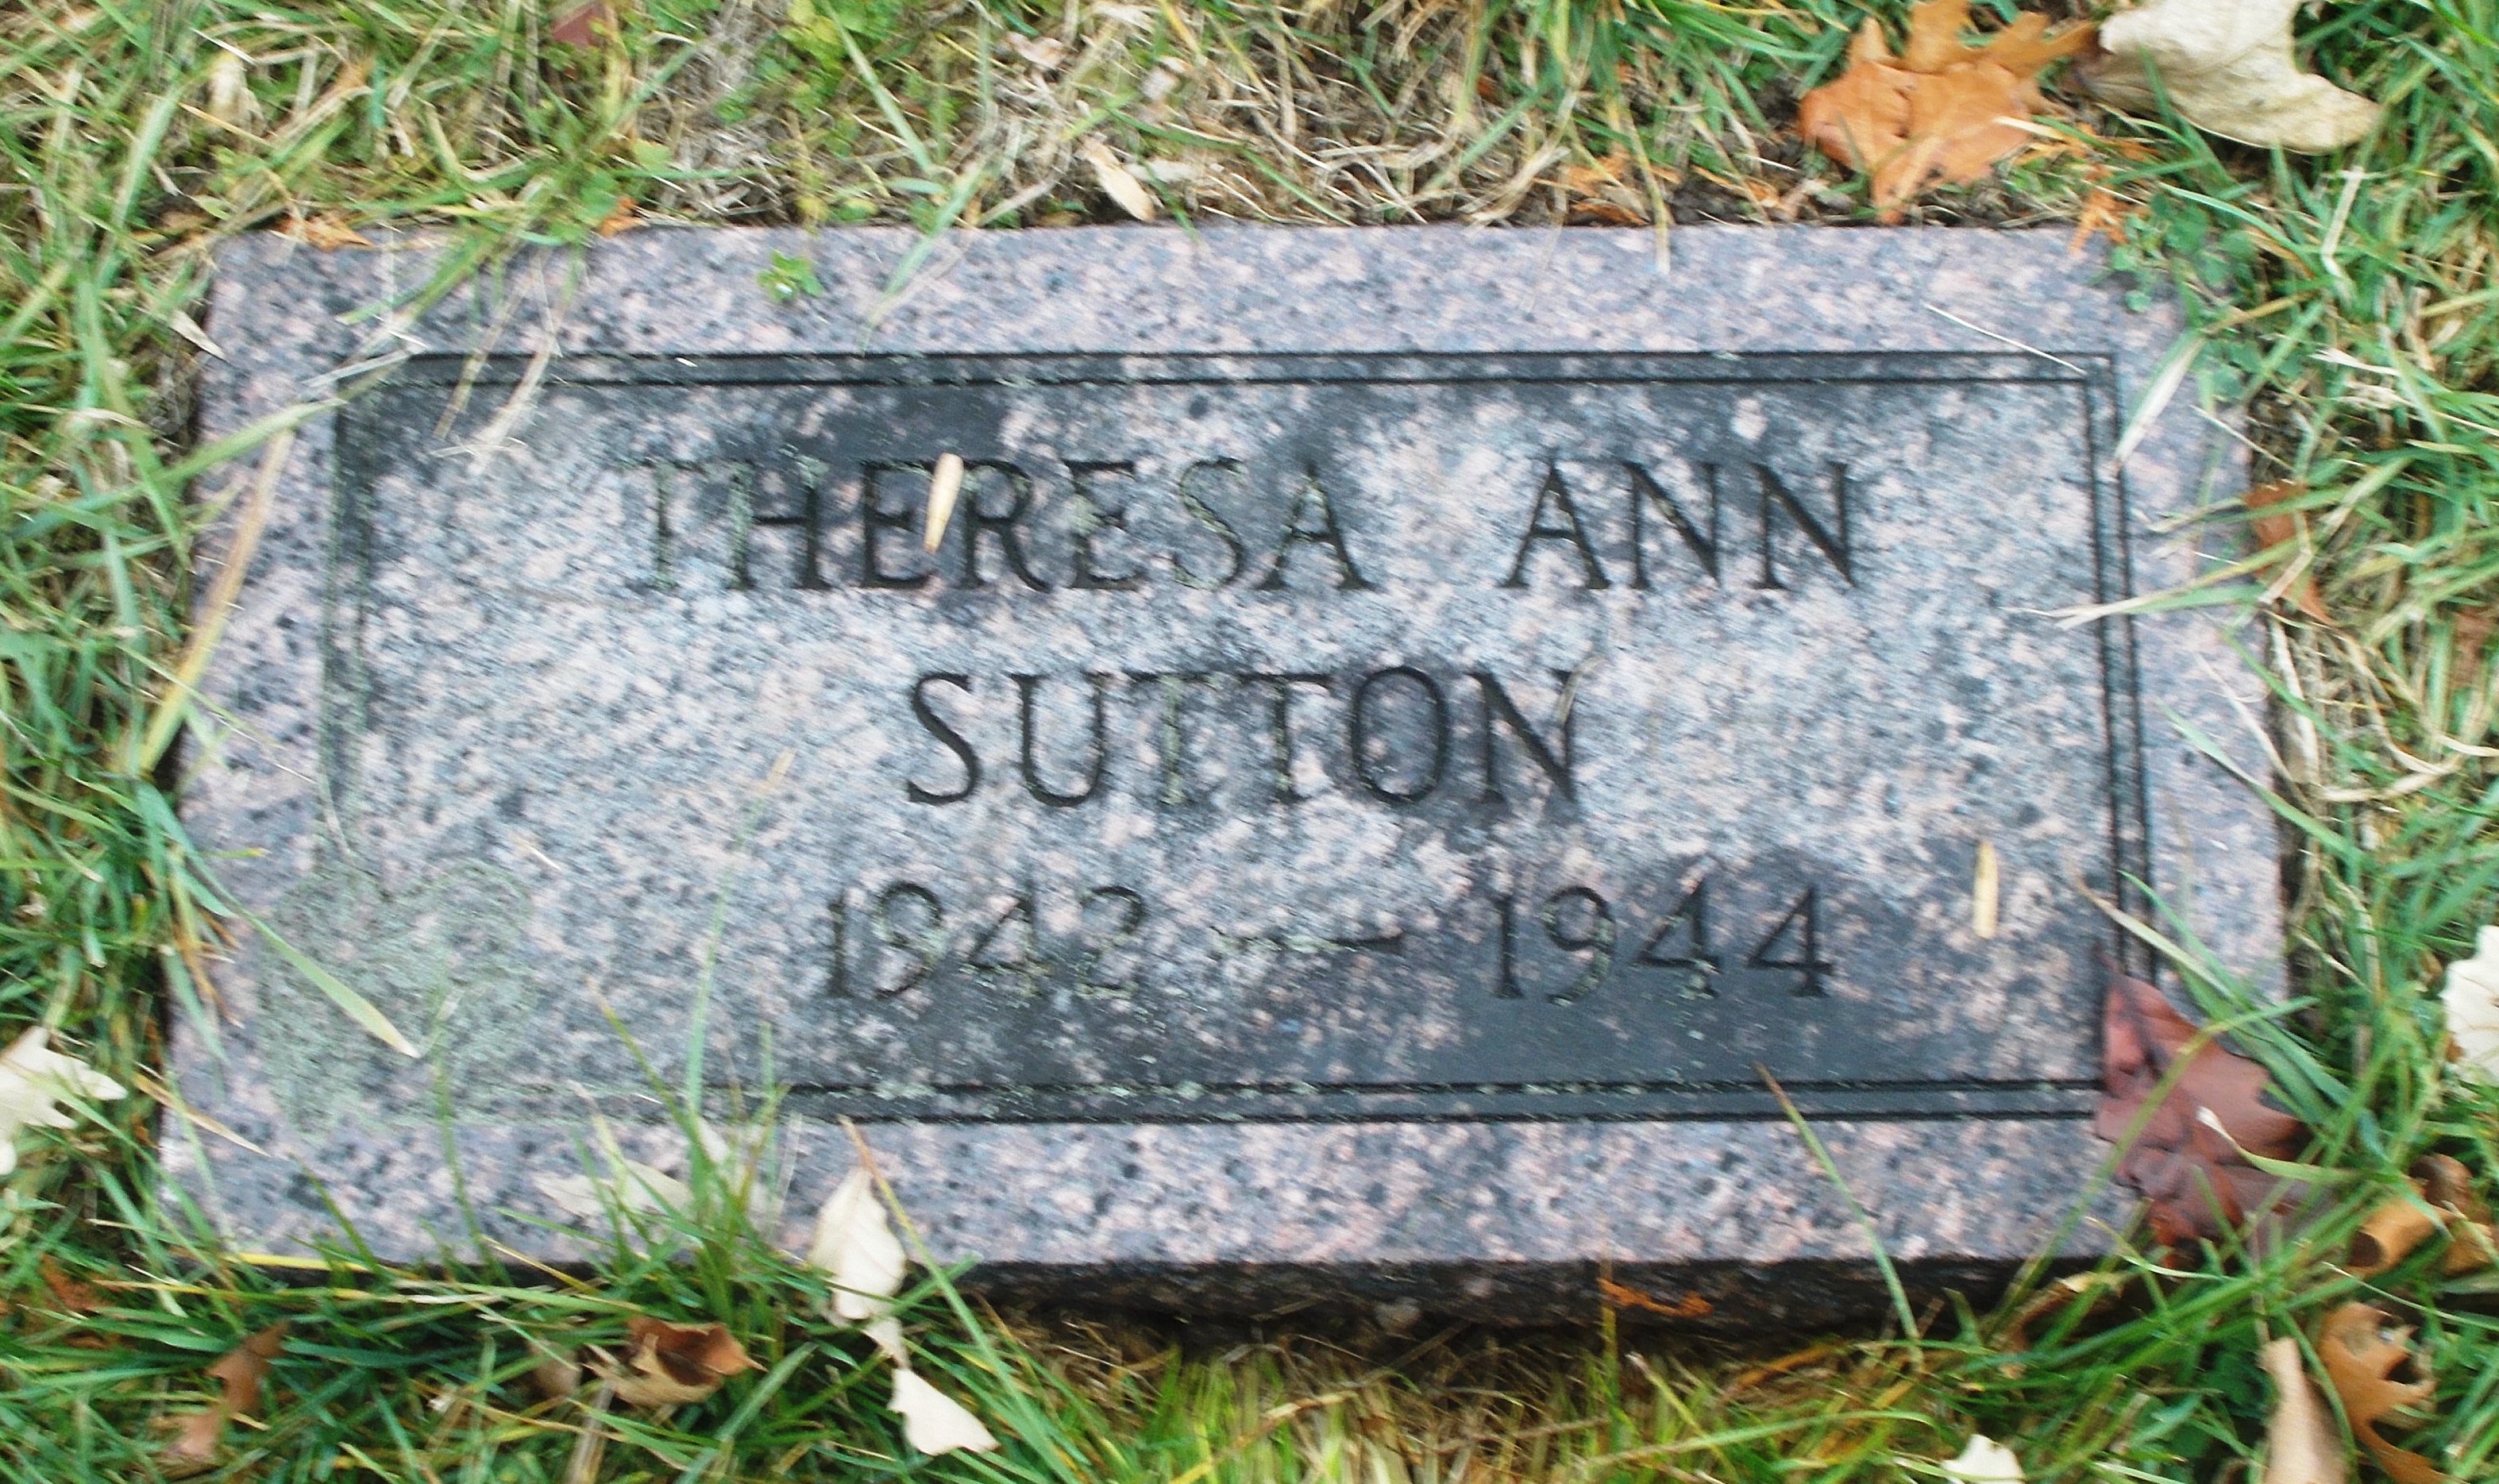 Theresa Ann Sutton